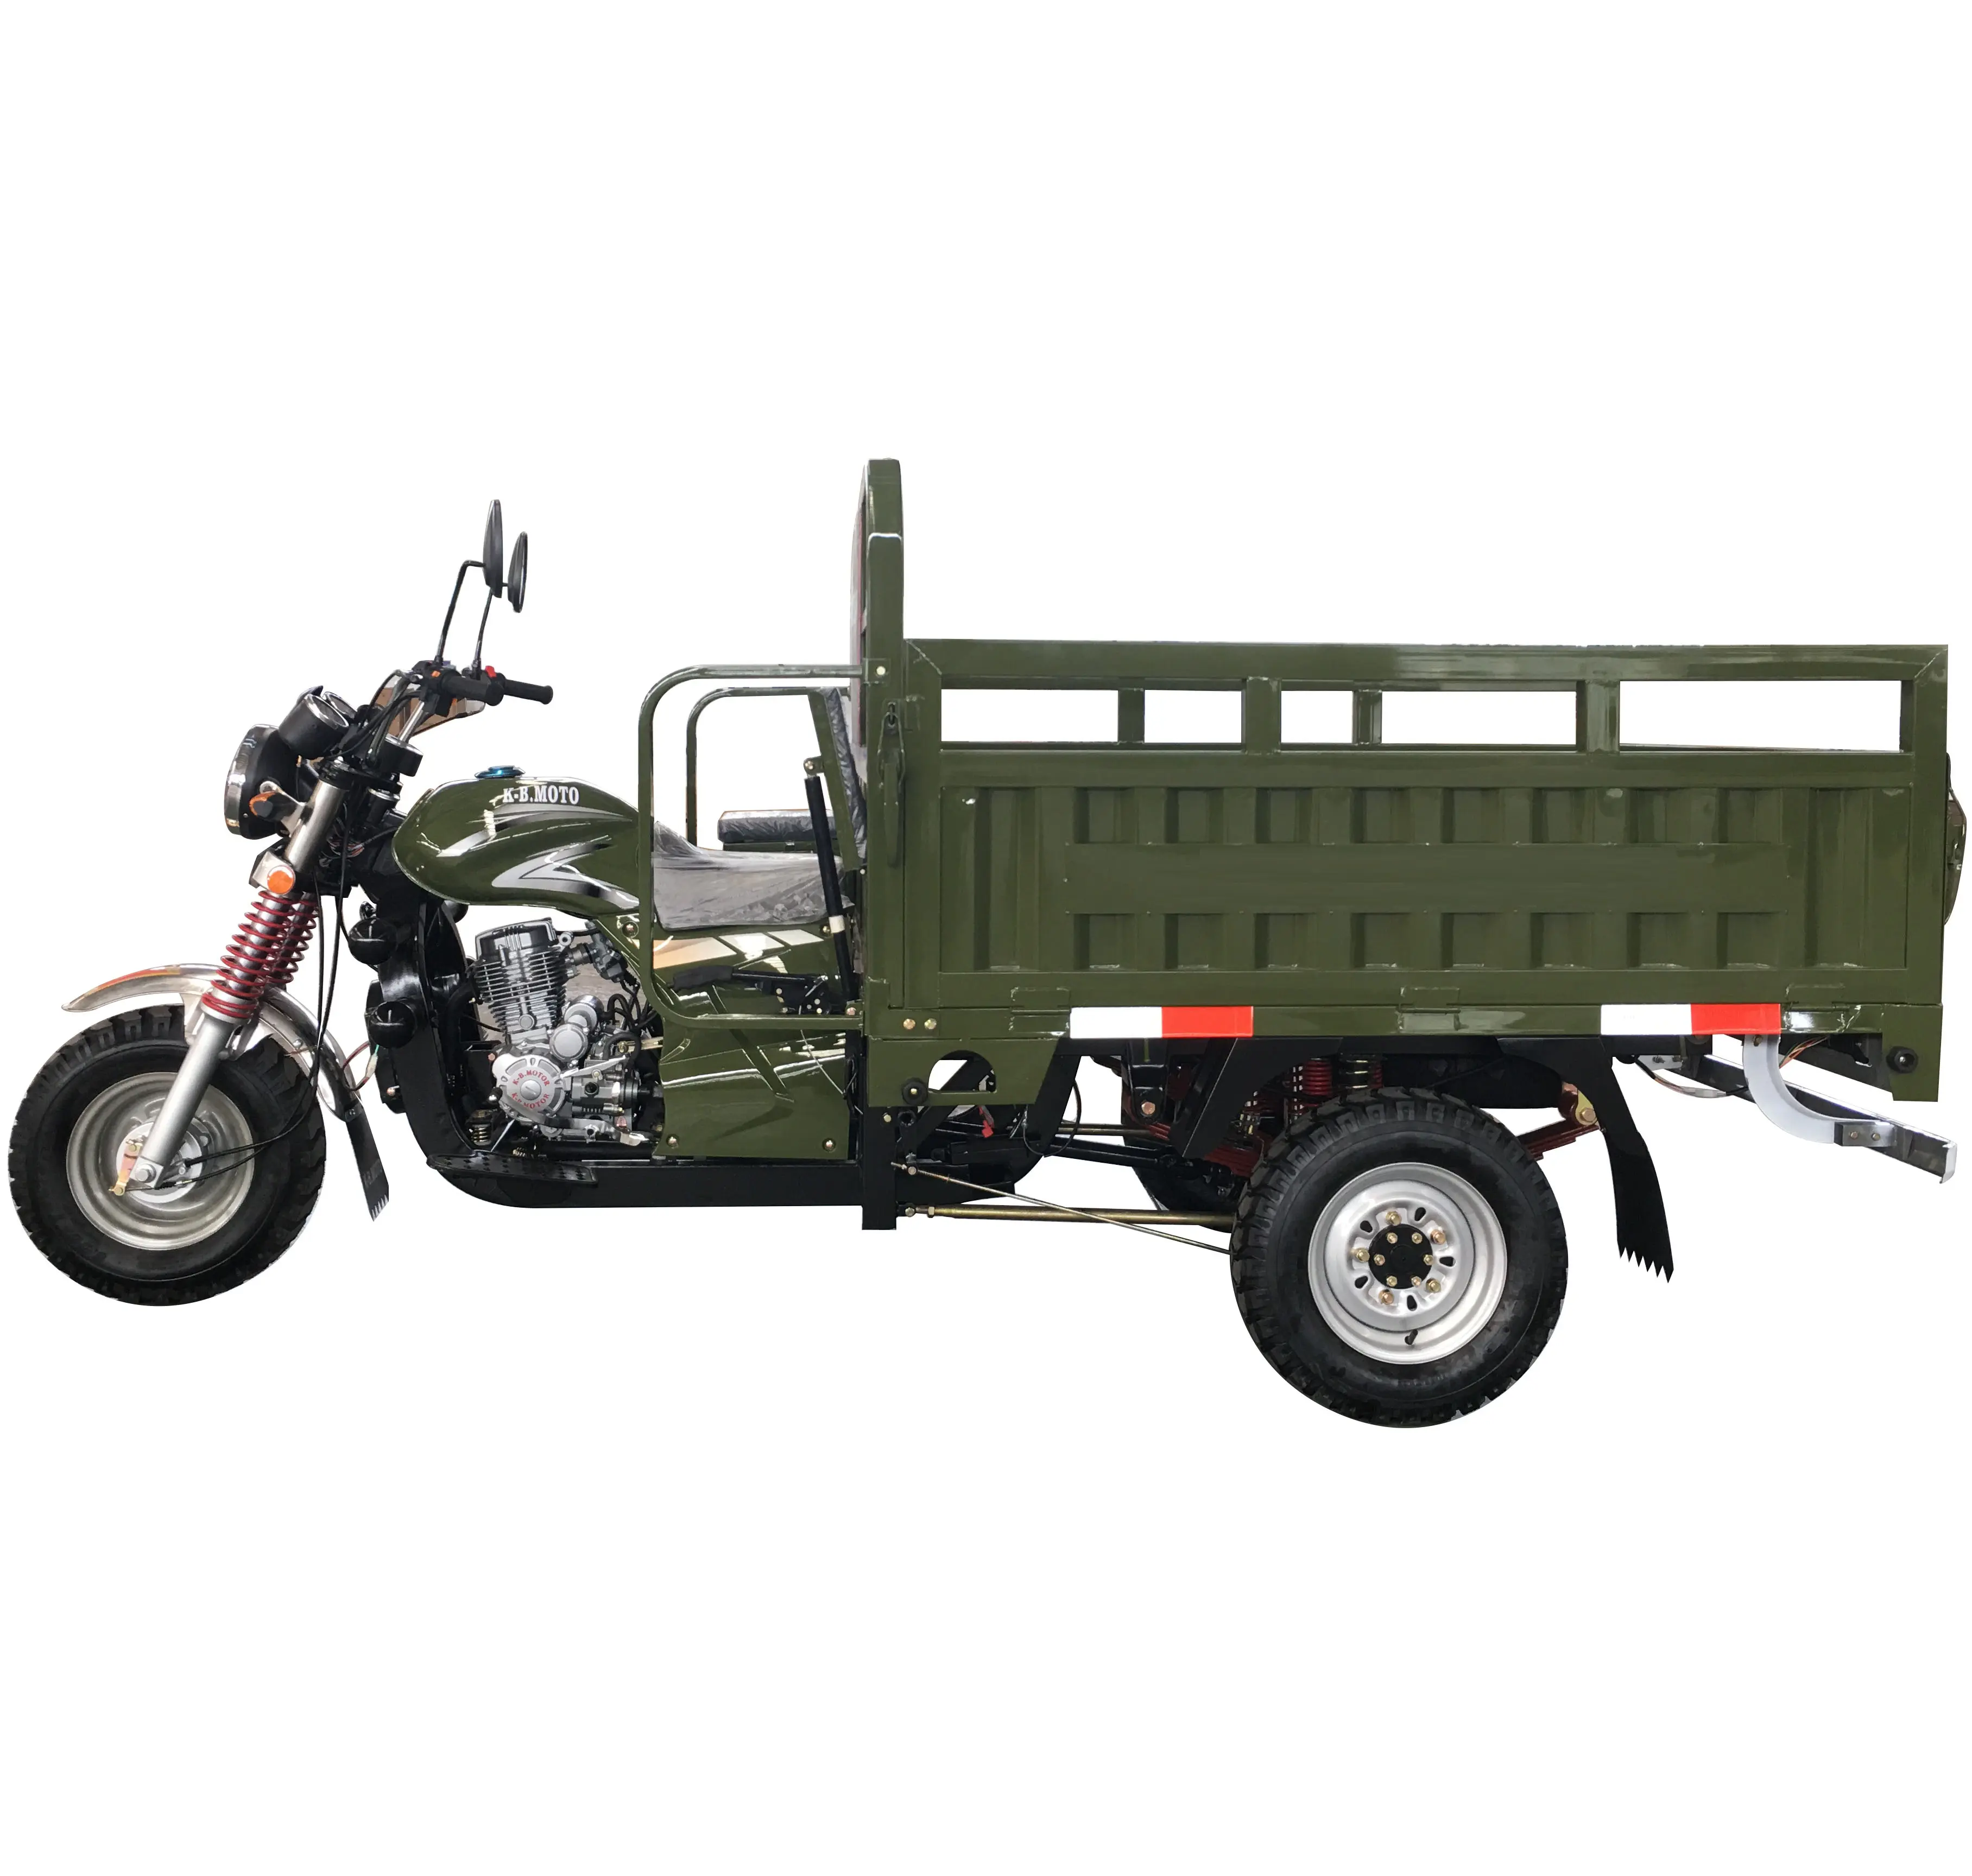 Mlong cina vendita calda 200cc motore di raffreddamento ad aria triciclo carico tre ruote triciclo a tre ruote